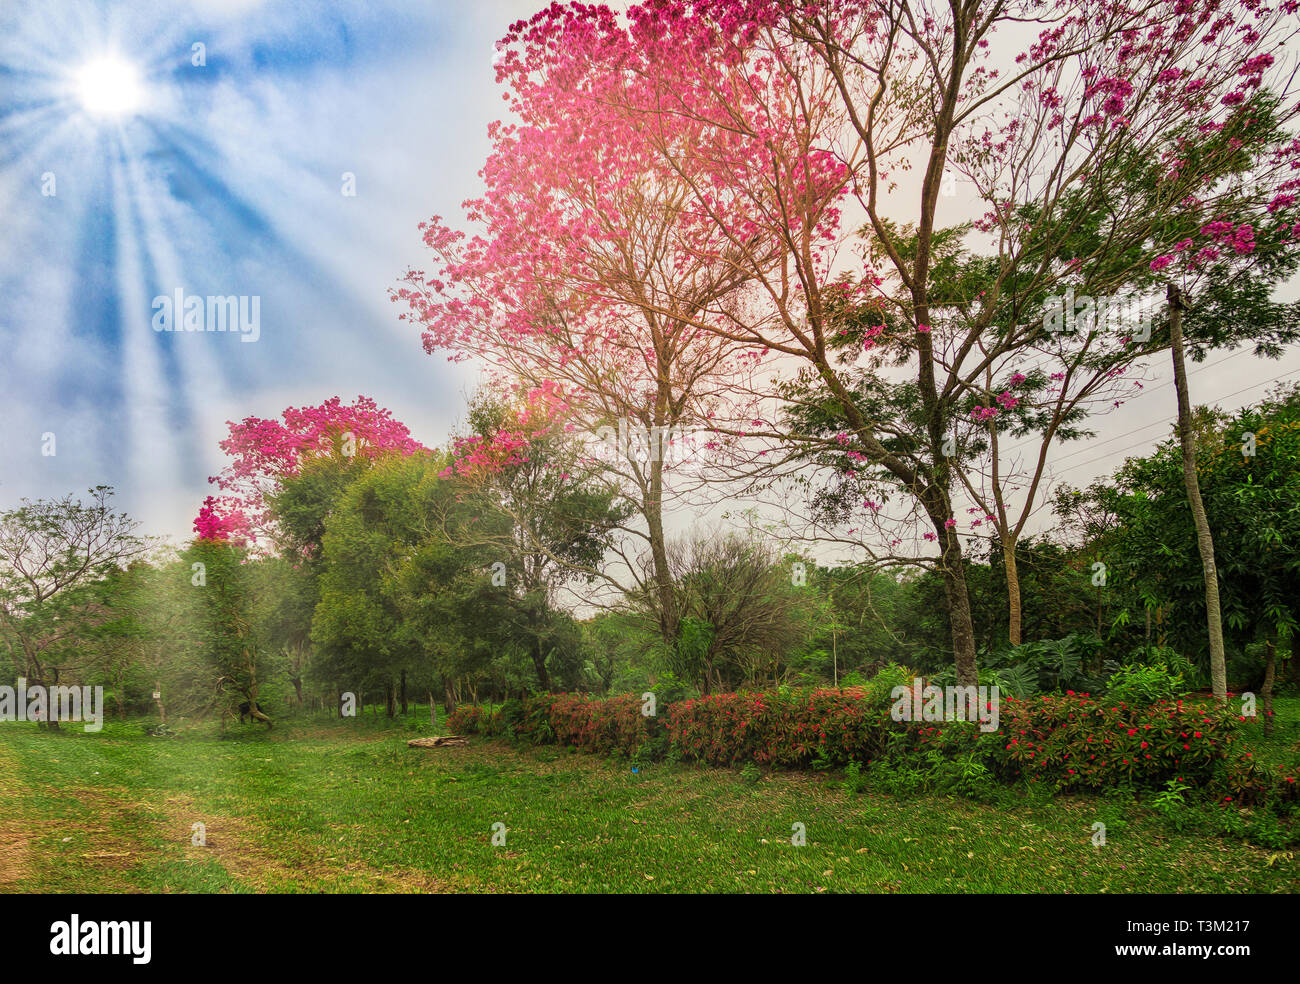 Blühende lapacho Bäume in Paraguay - Illustrativ bearbeitet Stockfoto